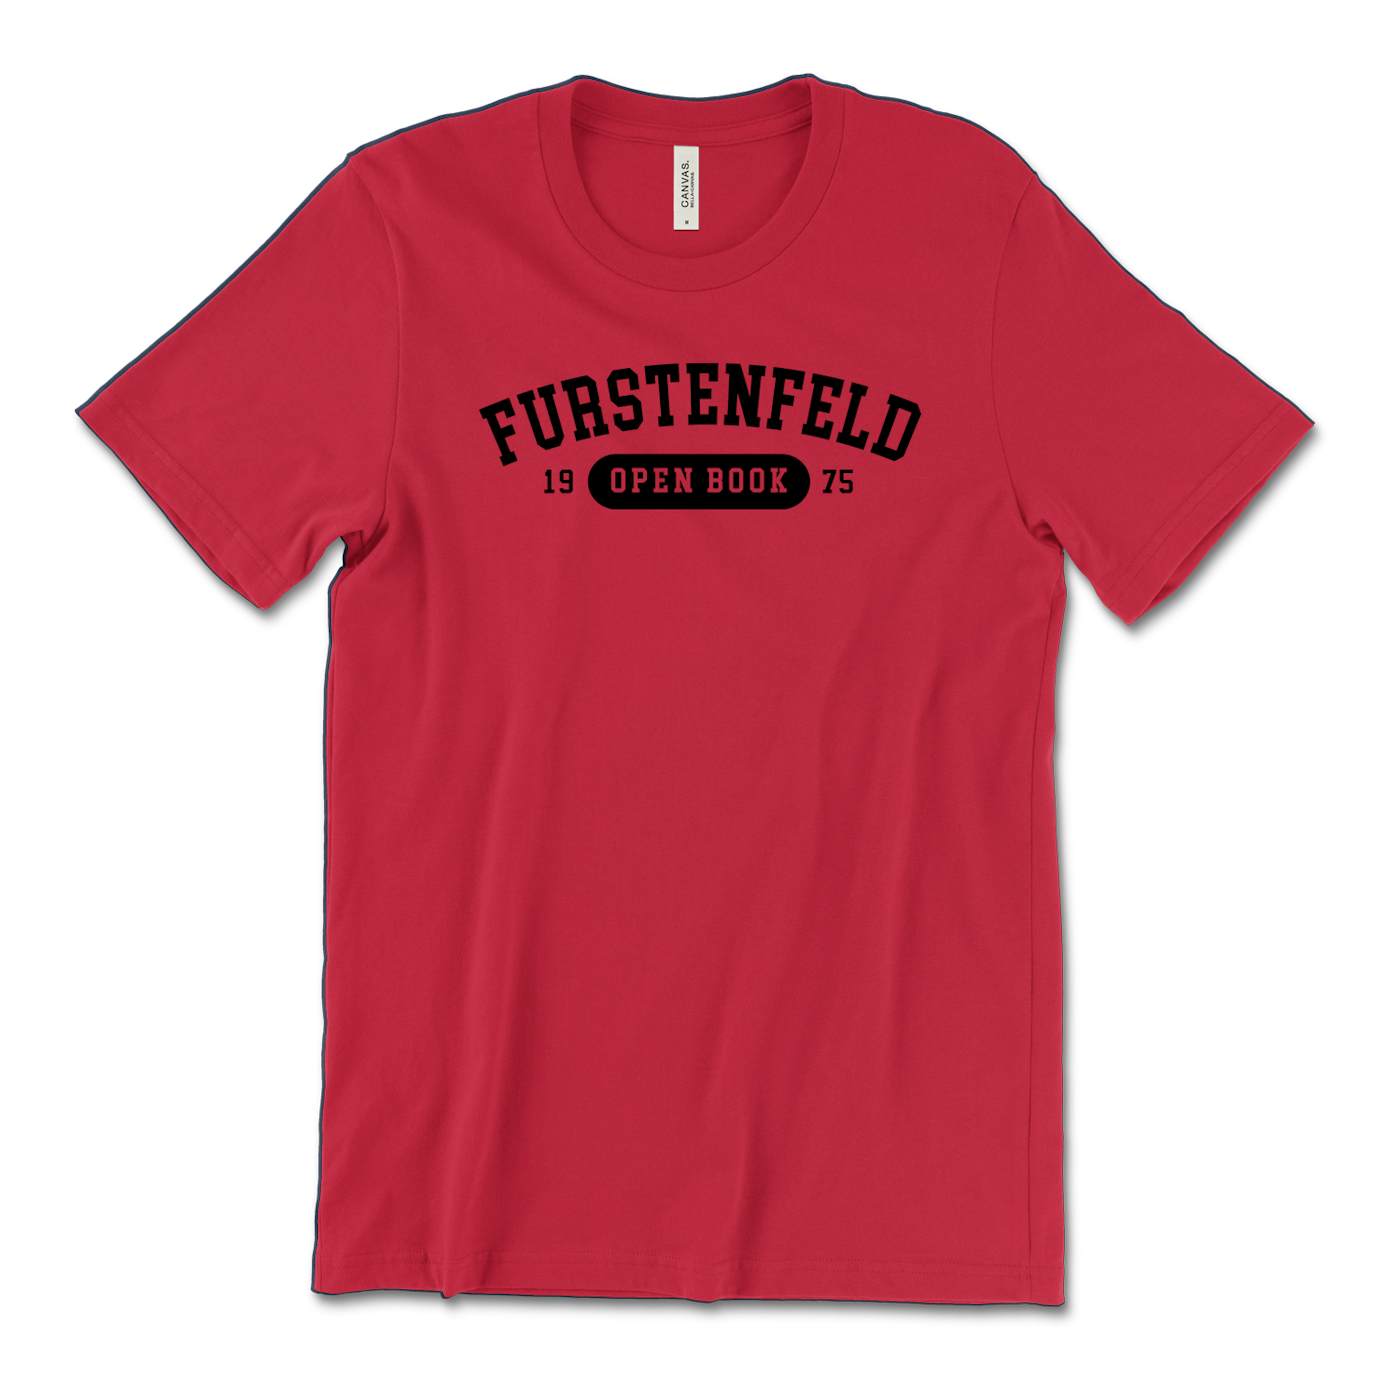 Gunner Black Co Justin Furstenfeld - Furstenfeld 1975 Red Tee